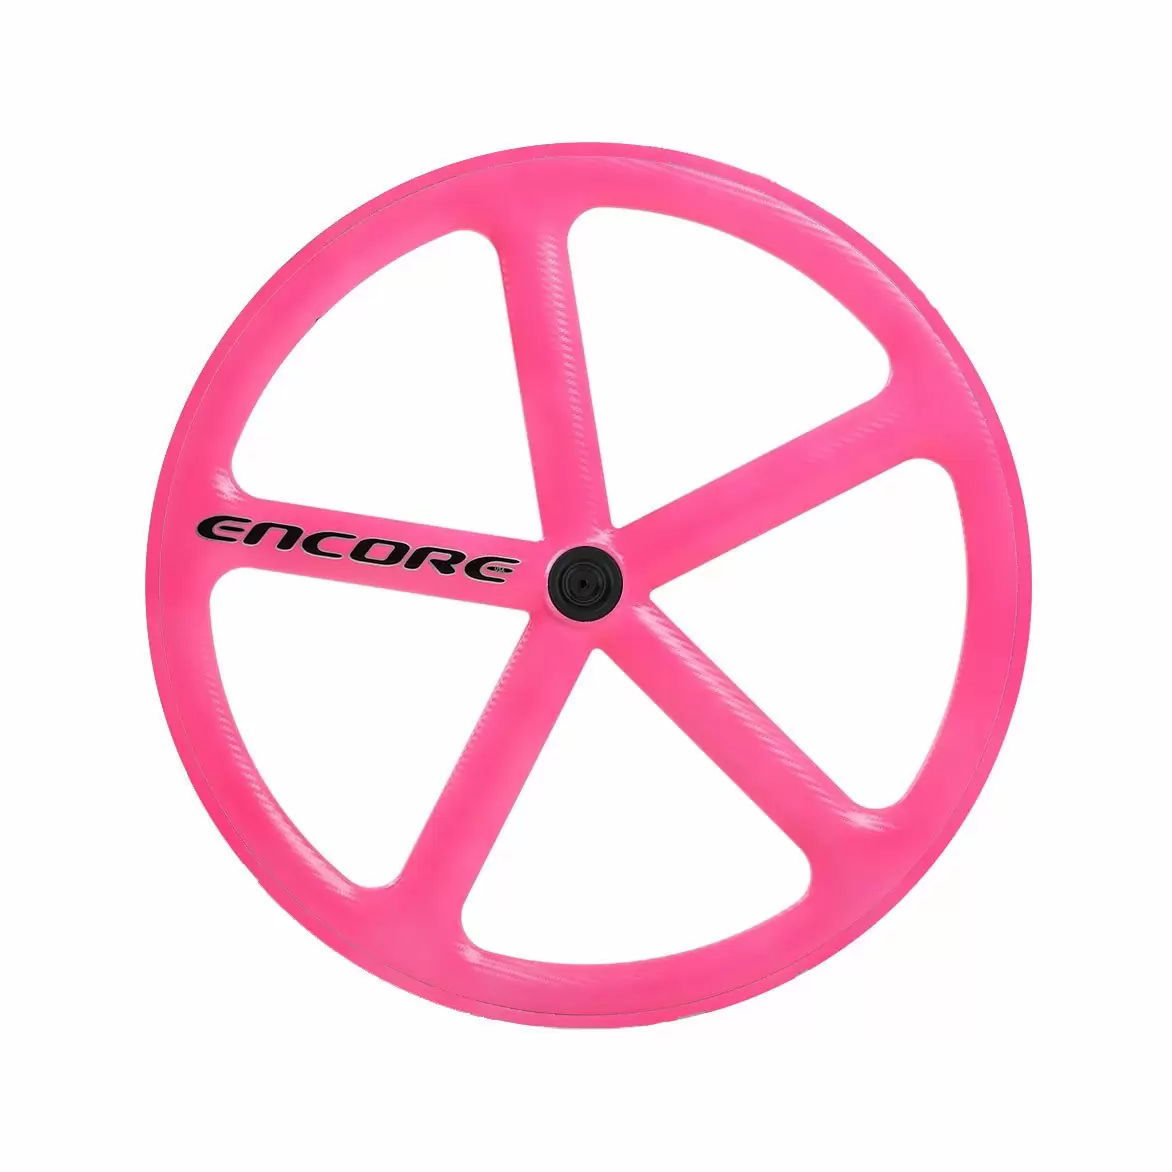 Hinterrad 700c Track 5 Speichen Carbon Weave Neon Pink Nmsw - image